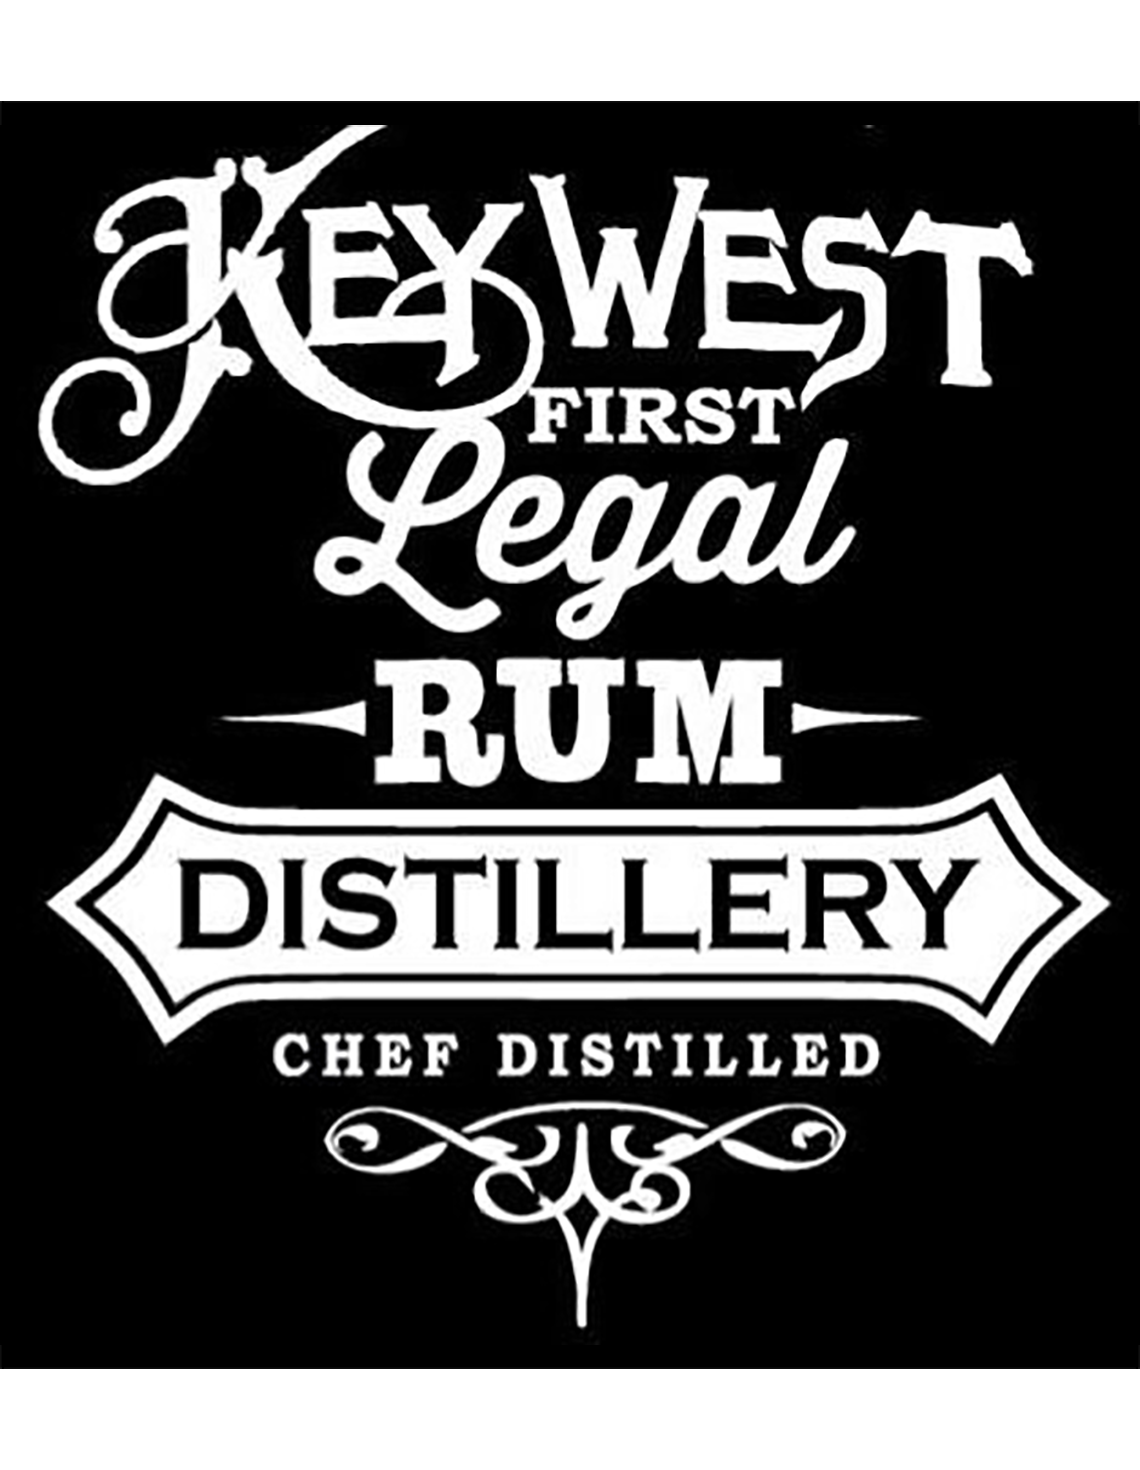 Key West Legal Rum logo